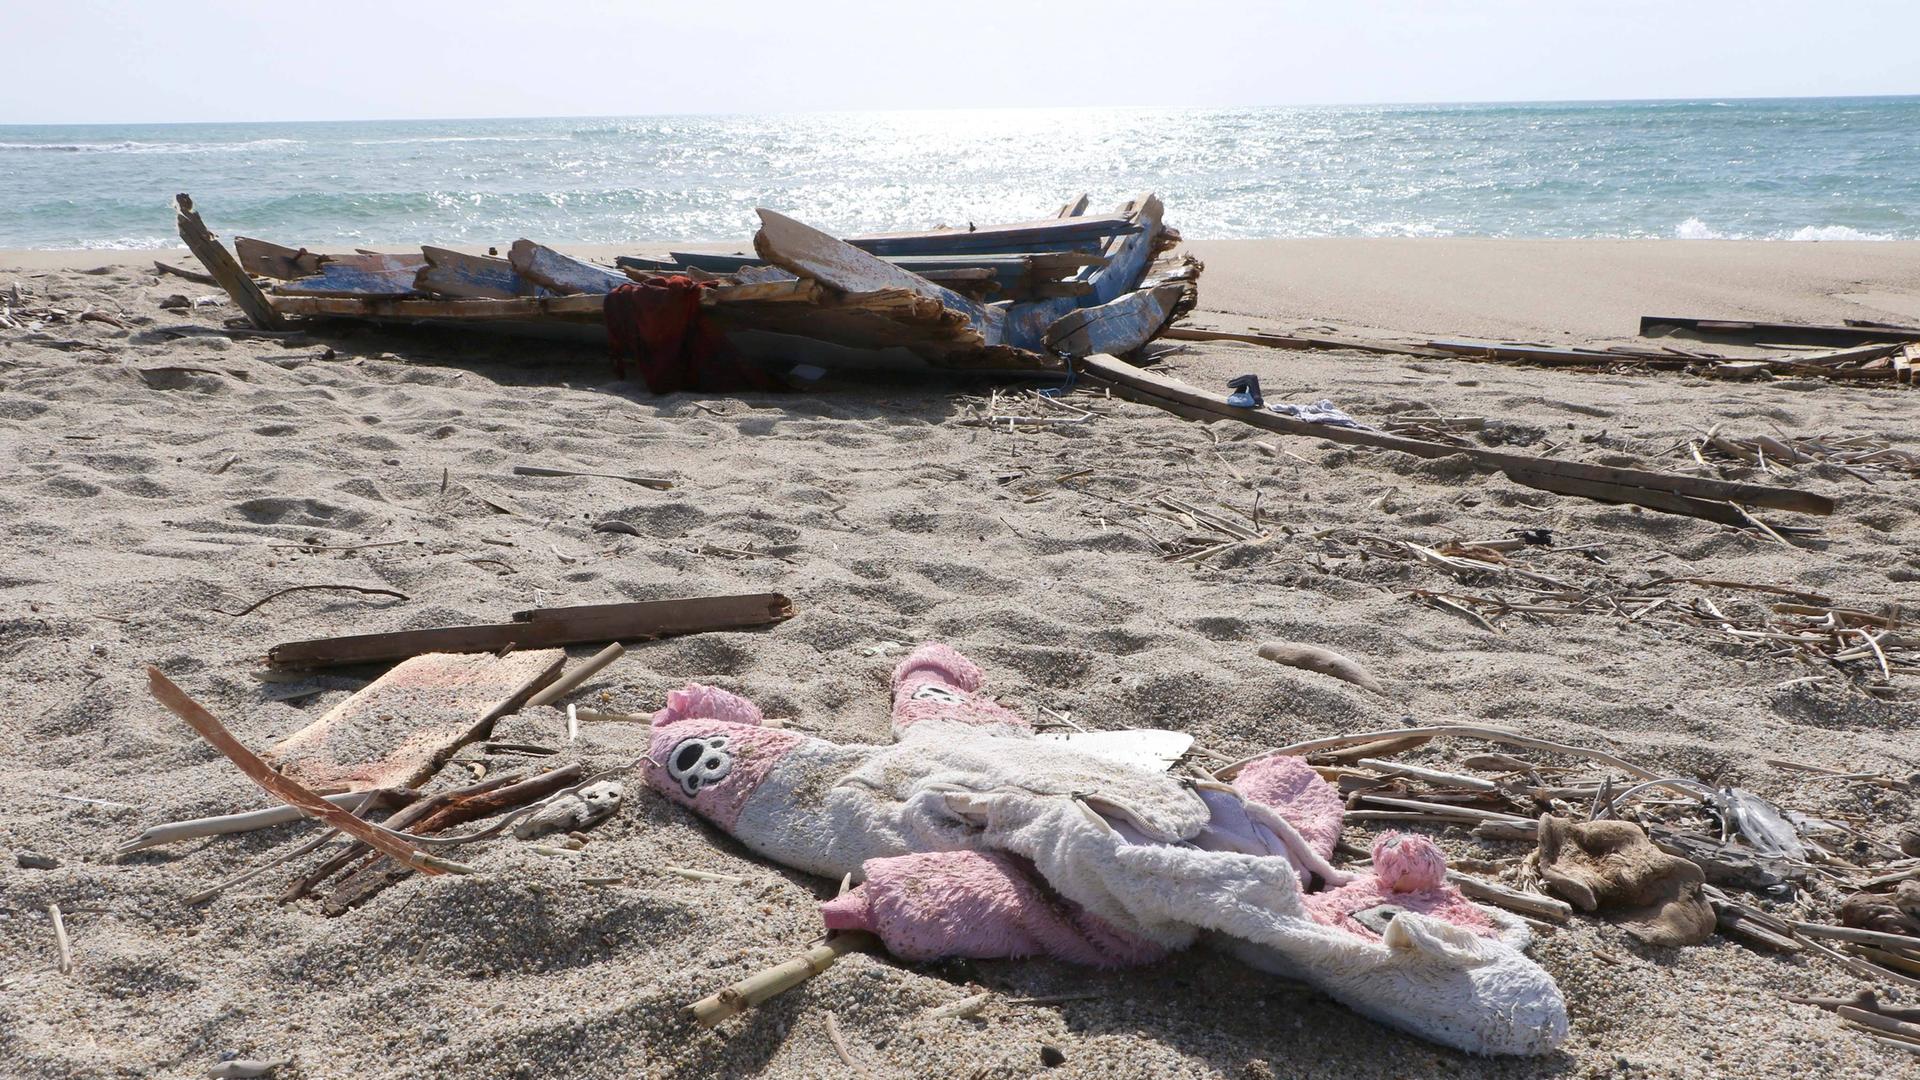 Trümmer von dem Boot und ein Kuschel-Tier liegen an einem Strand.